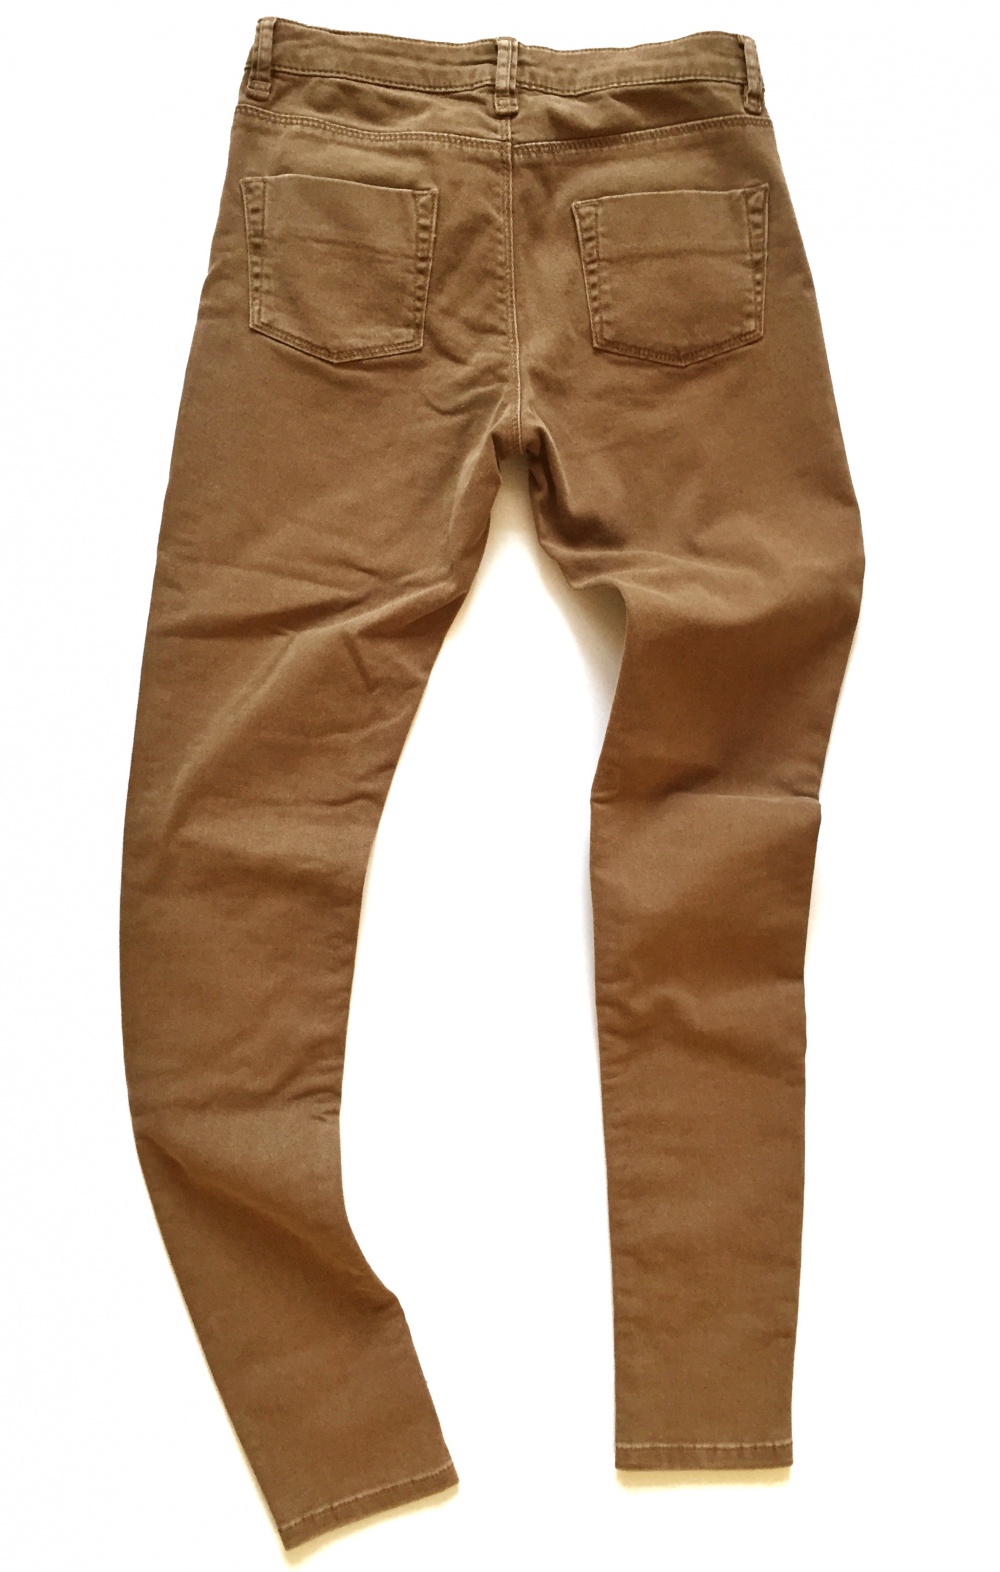 Джинсы ASOS Washed Camel Skinny Jeans, размер UK6 (25-26), новые